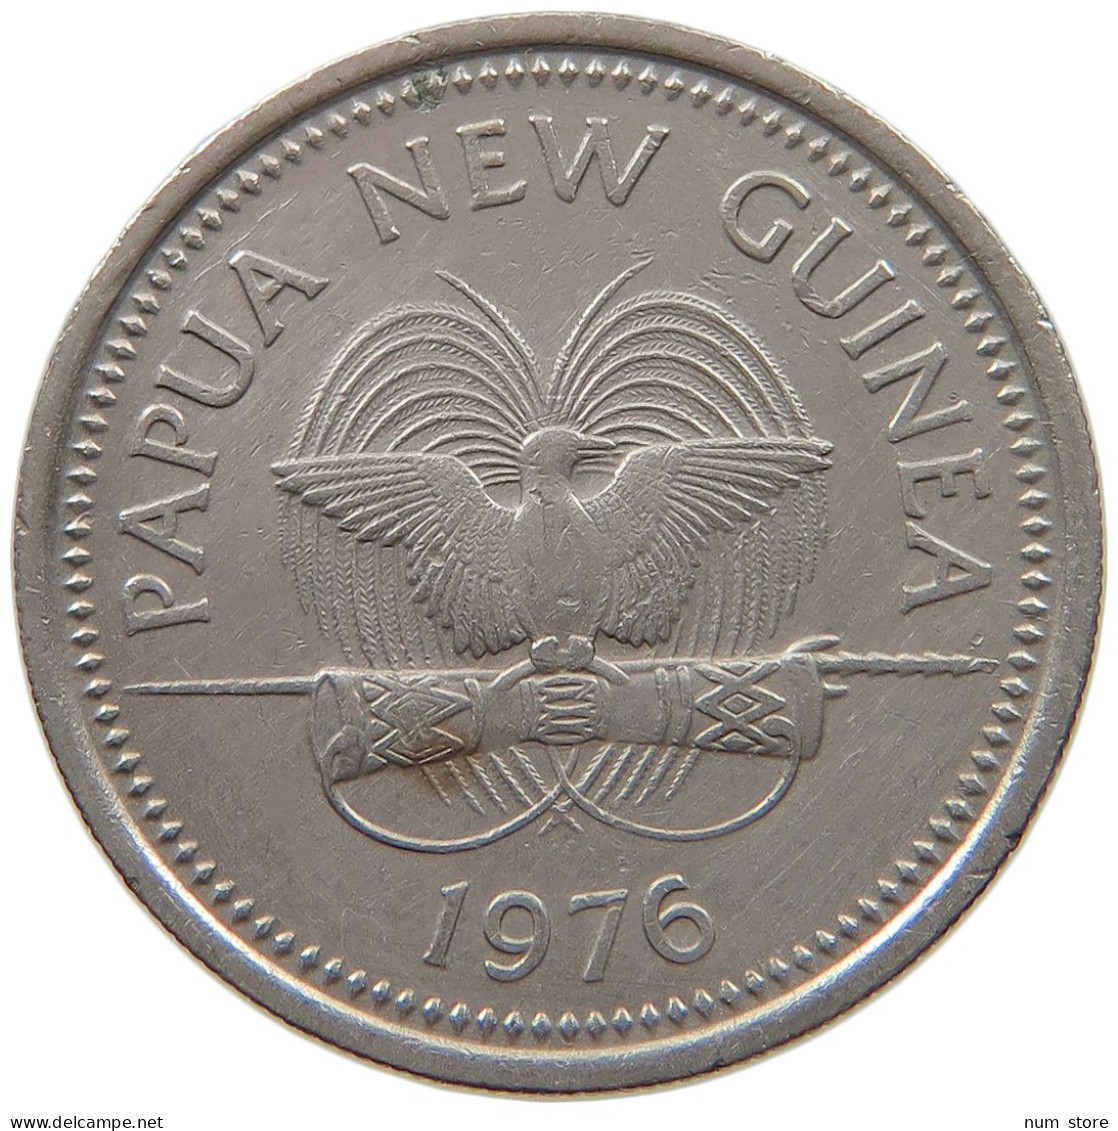 NEW GUINEA 10 TOEA 1976  #a053 0815 - Papúa Nueva Guinea